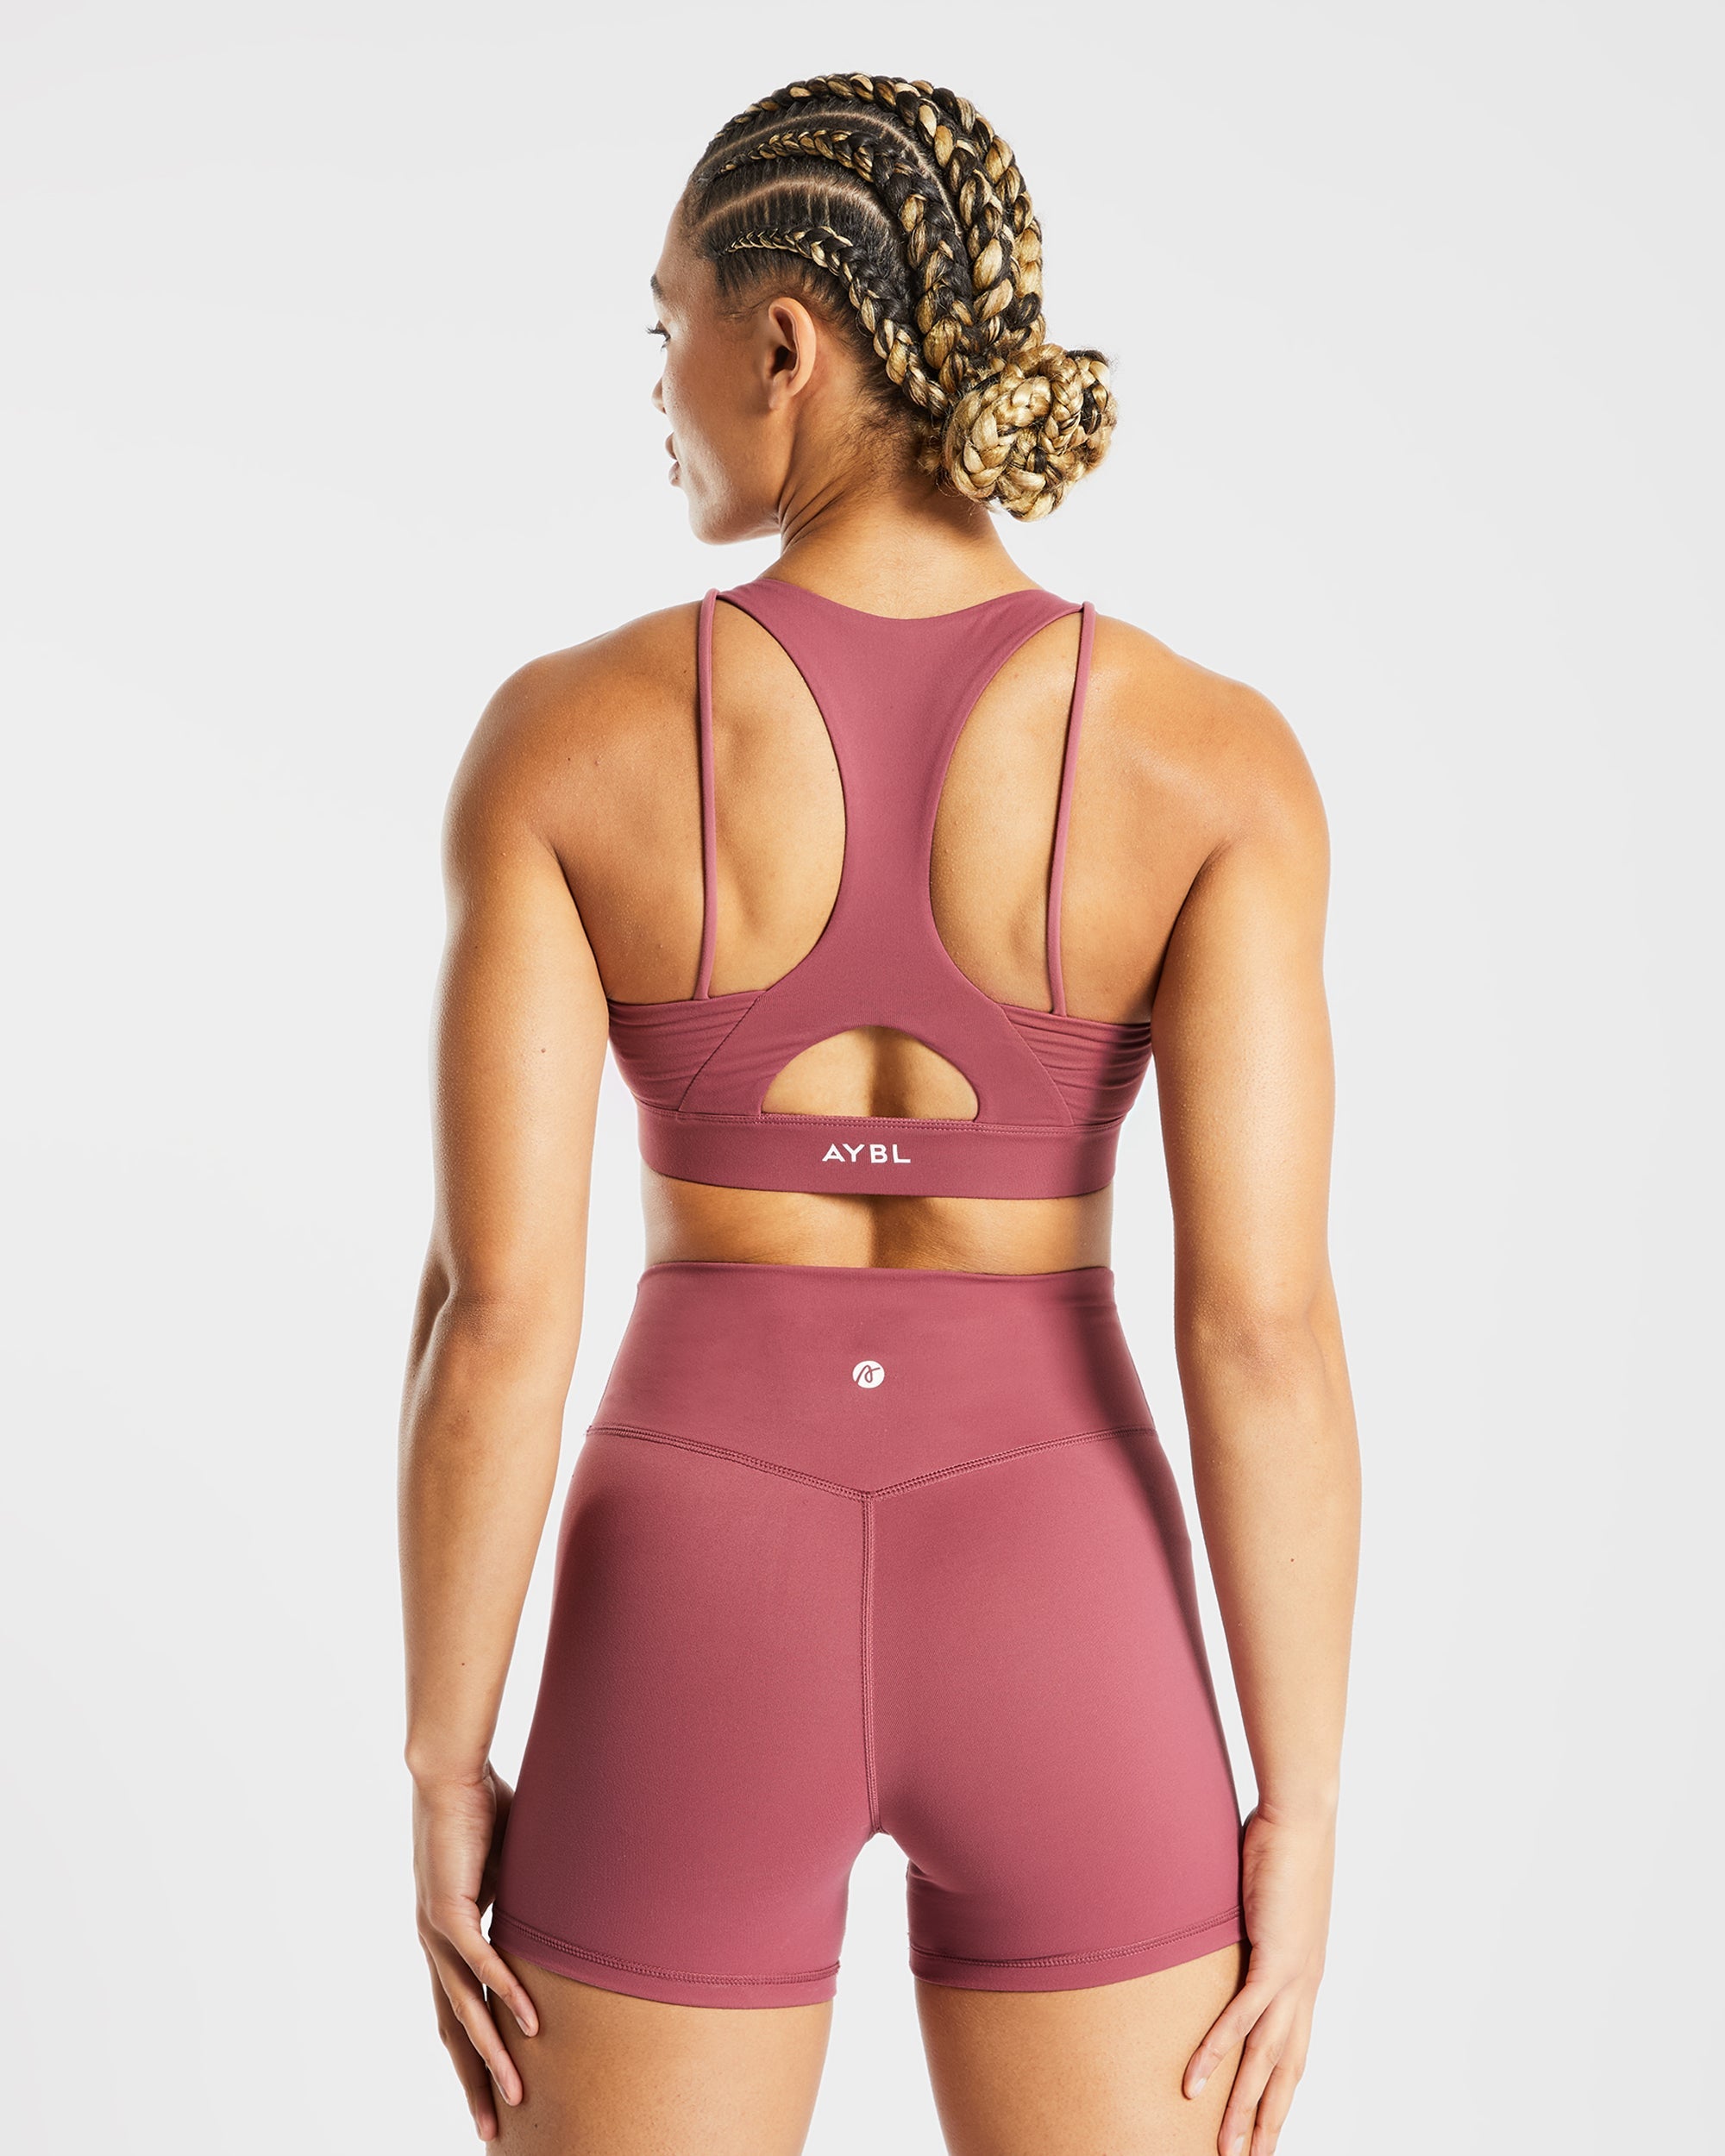 AYBL essential strappy sports bra Black Size M - $18 (48% Off Retail) -  From Kara